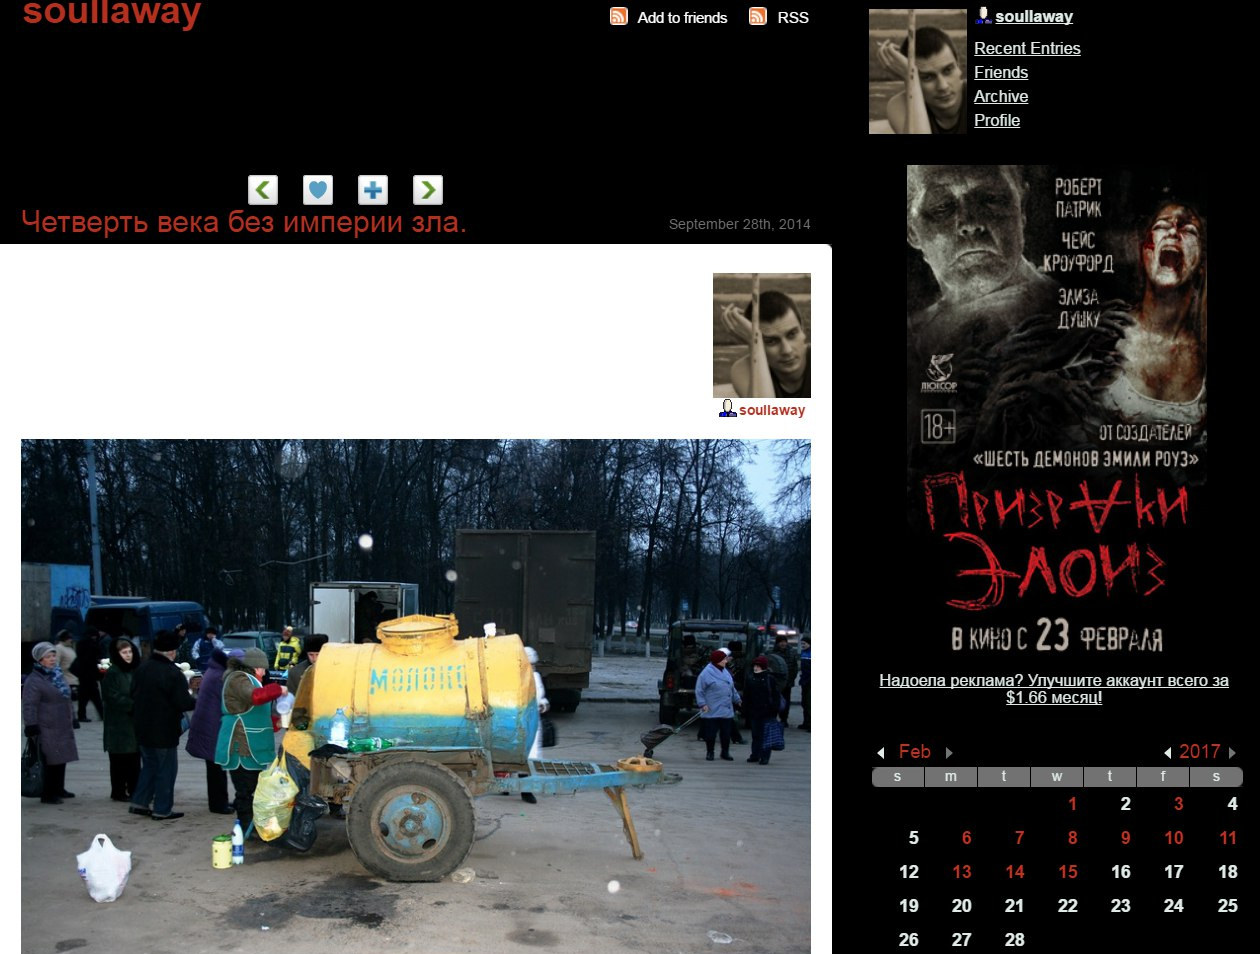 Вячеслав Мельников никнейм в ЖЖ: soullaway блог ведется с 15 февраля 2011 года количество подписчиков: 1 443 человека Фото №5